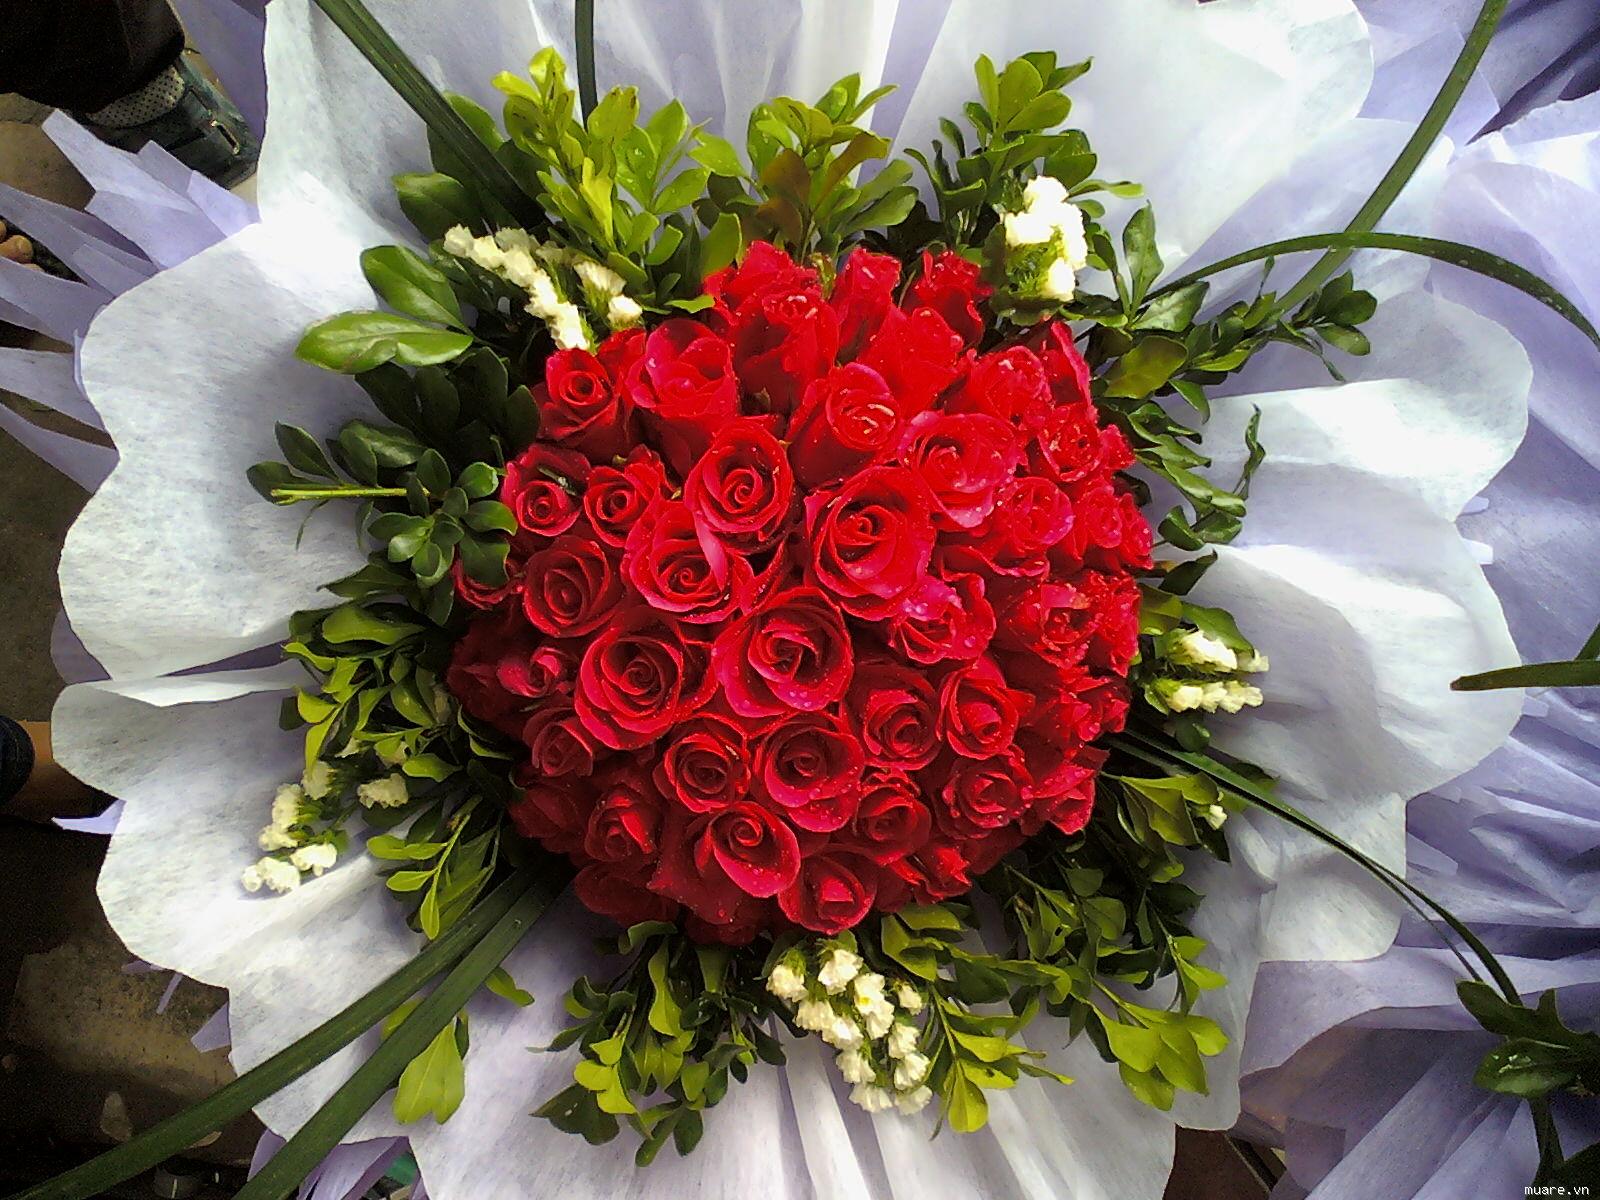 Bó hoa hồng trái tim là biểu tượng của tình yêu ngọt ngào và lãng mạn. Hãy cùng ngắm những đóa hoa hồng đỏ đầy sức sống và tình cảm được bó lại như một trái tim hoàn hảo trong bó hoa này.